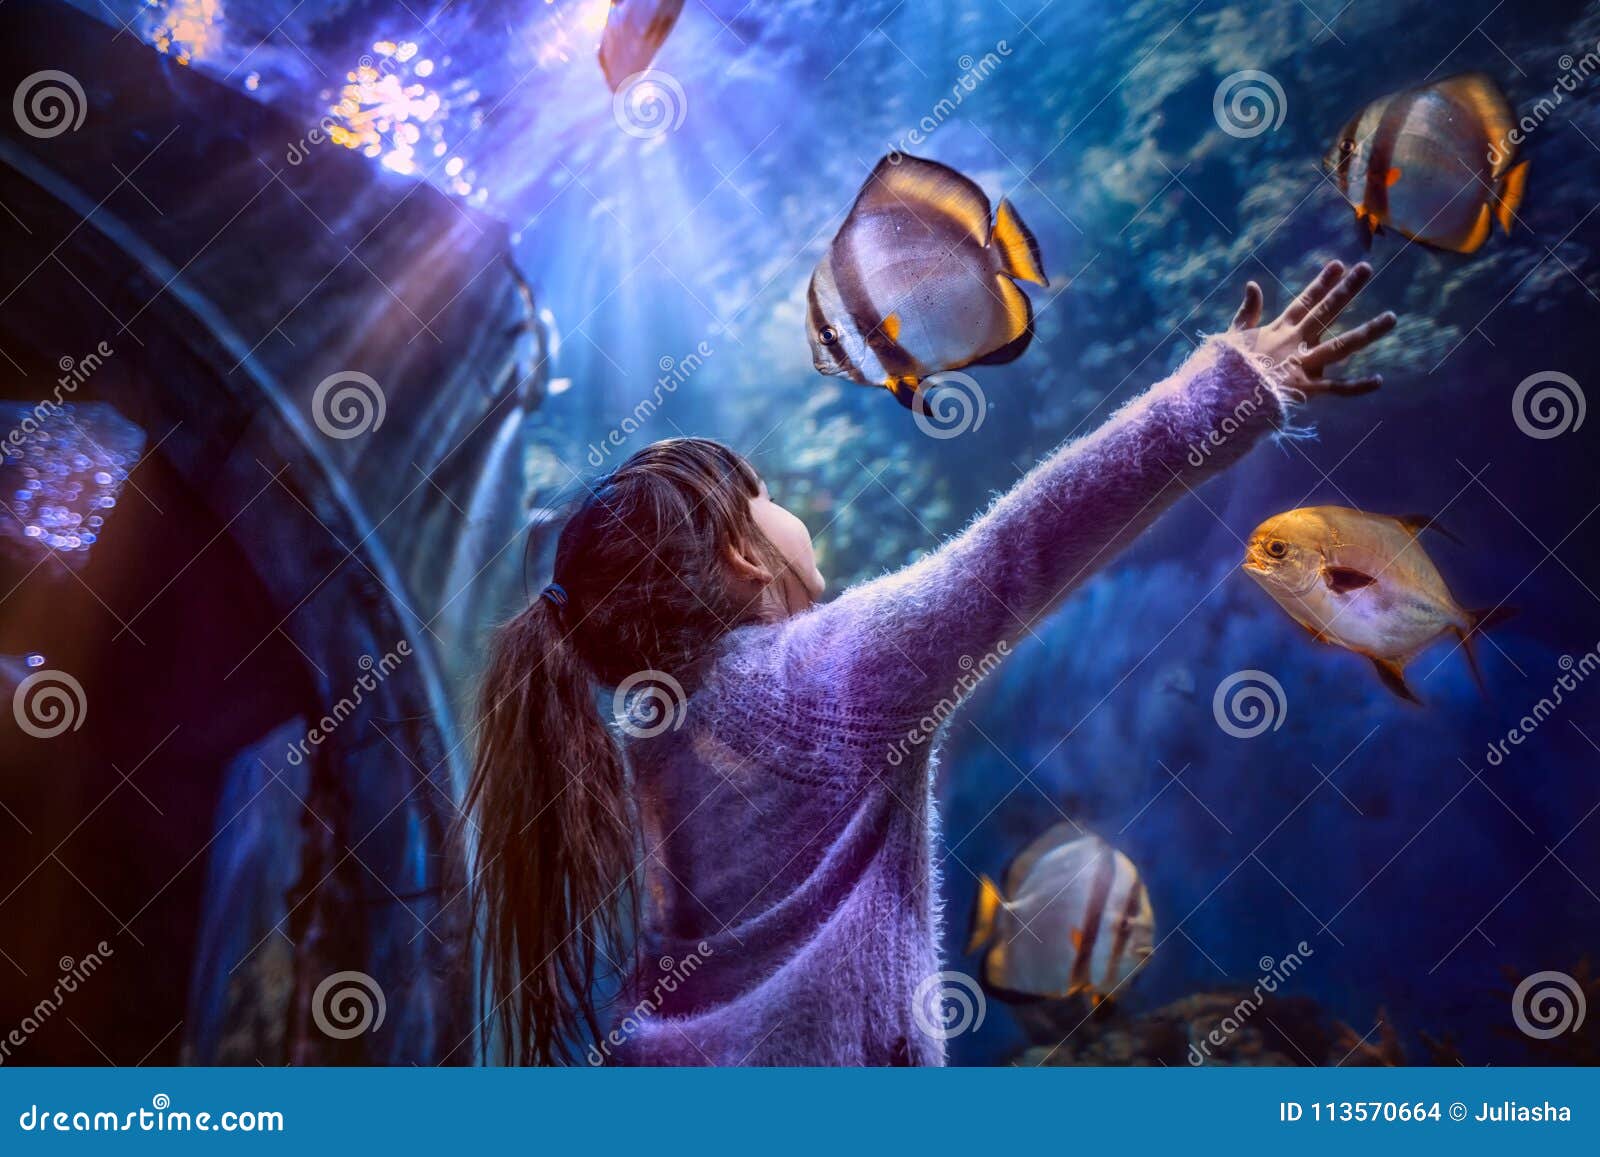 little girl in the aquarium